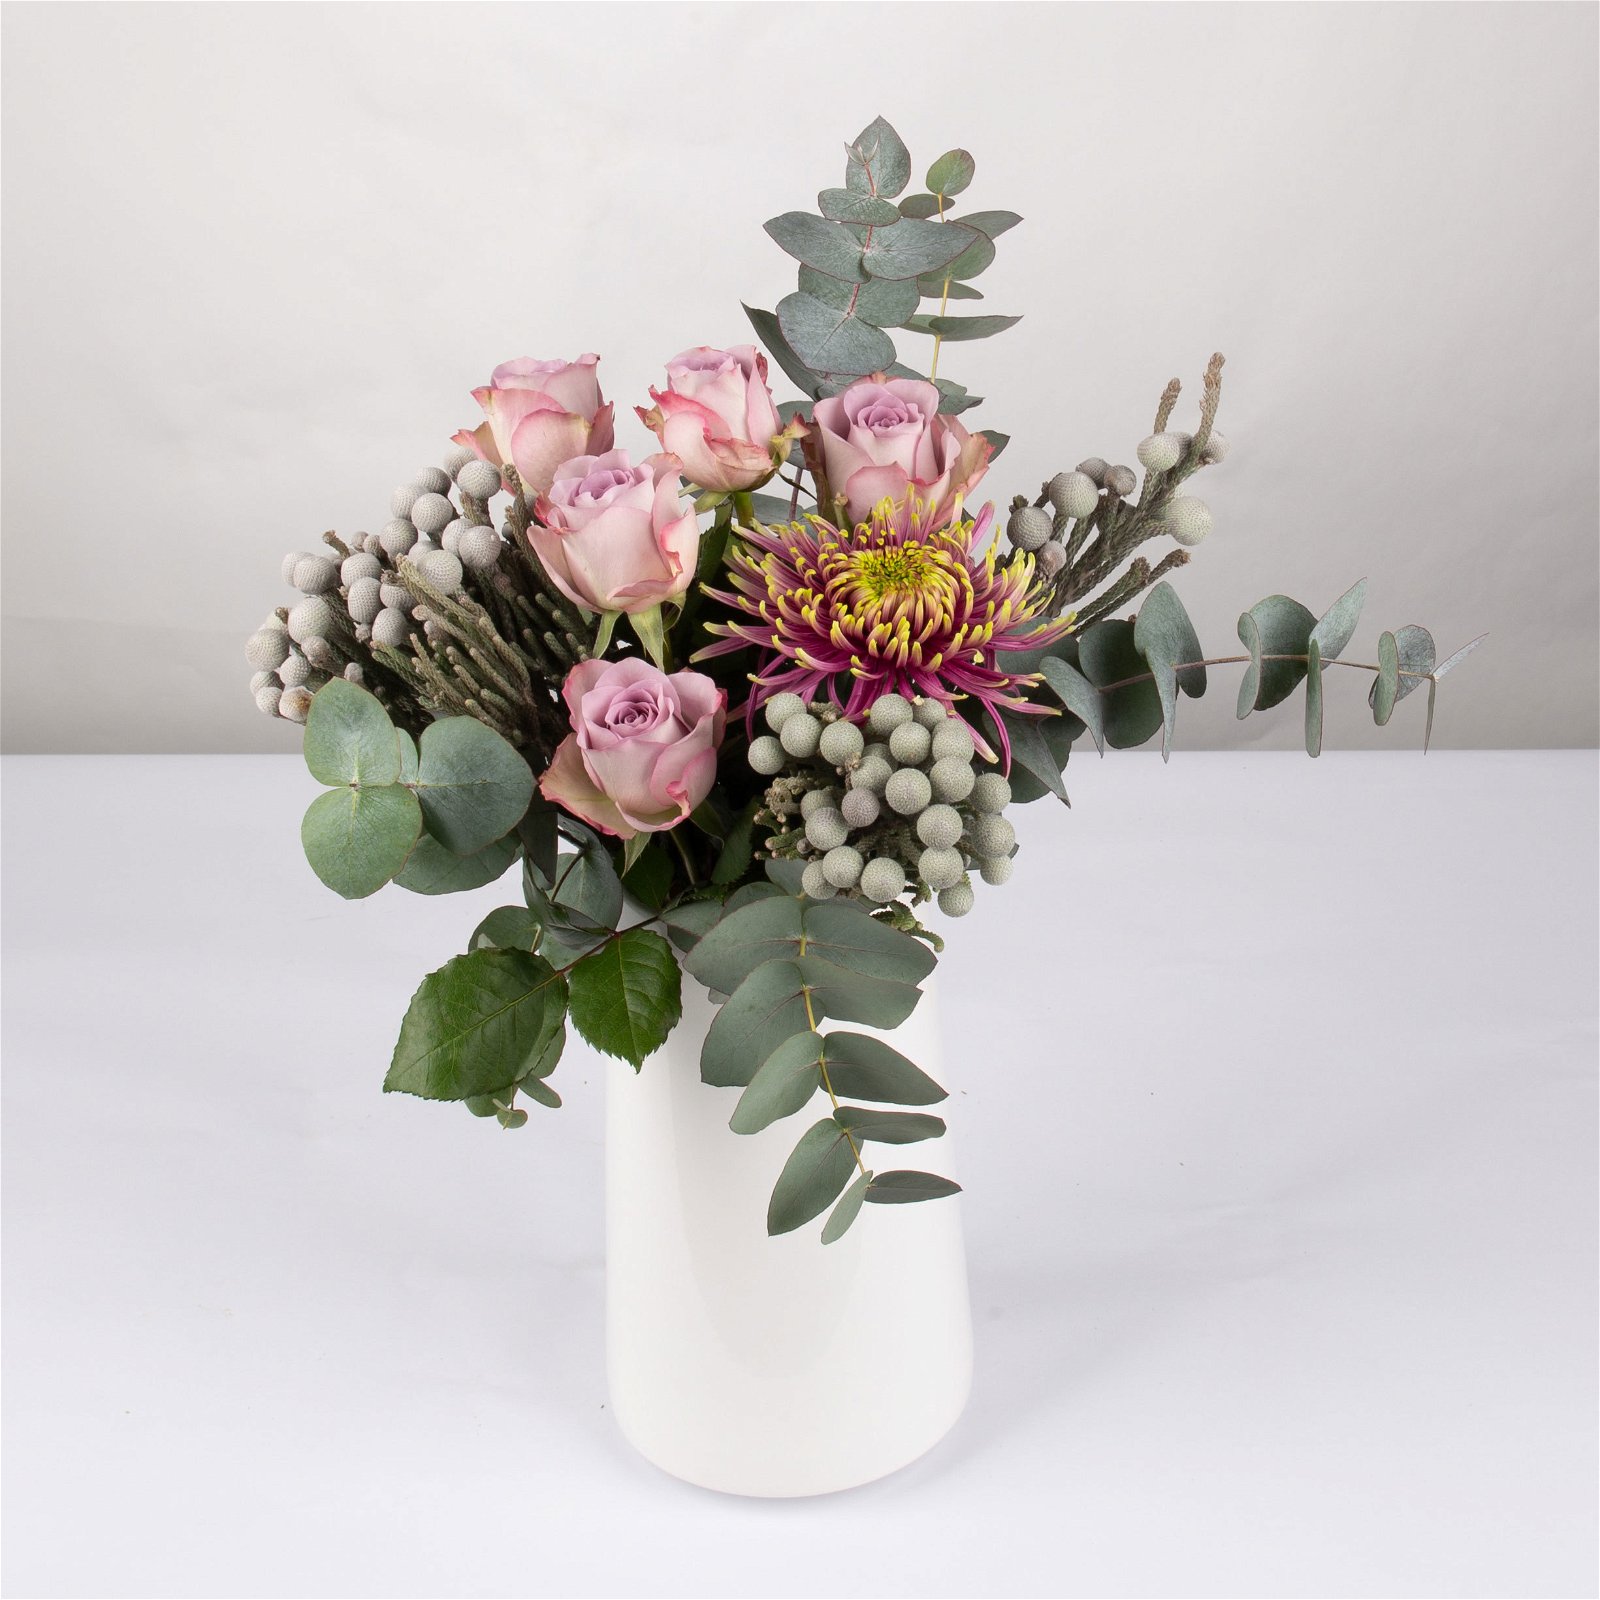 Blumenbund Rose 'Memory Lane' & Chrysantheme 'Baltazar', inkl. gratis Grußkarte